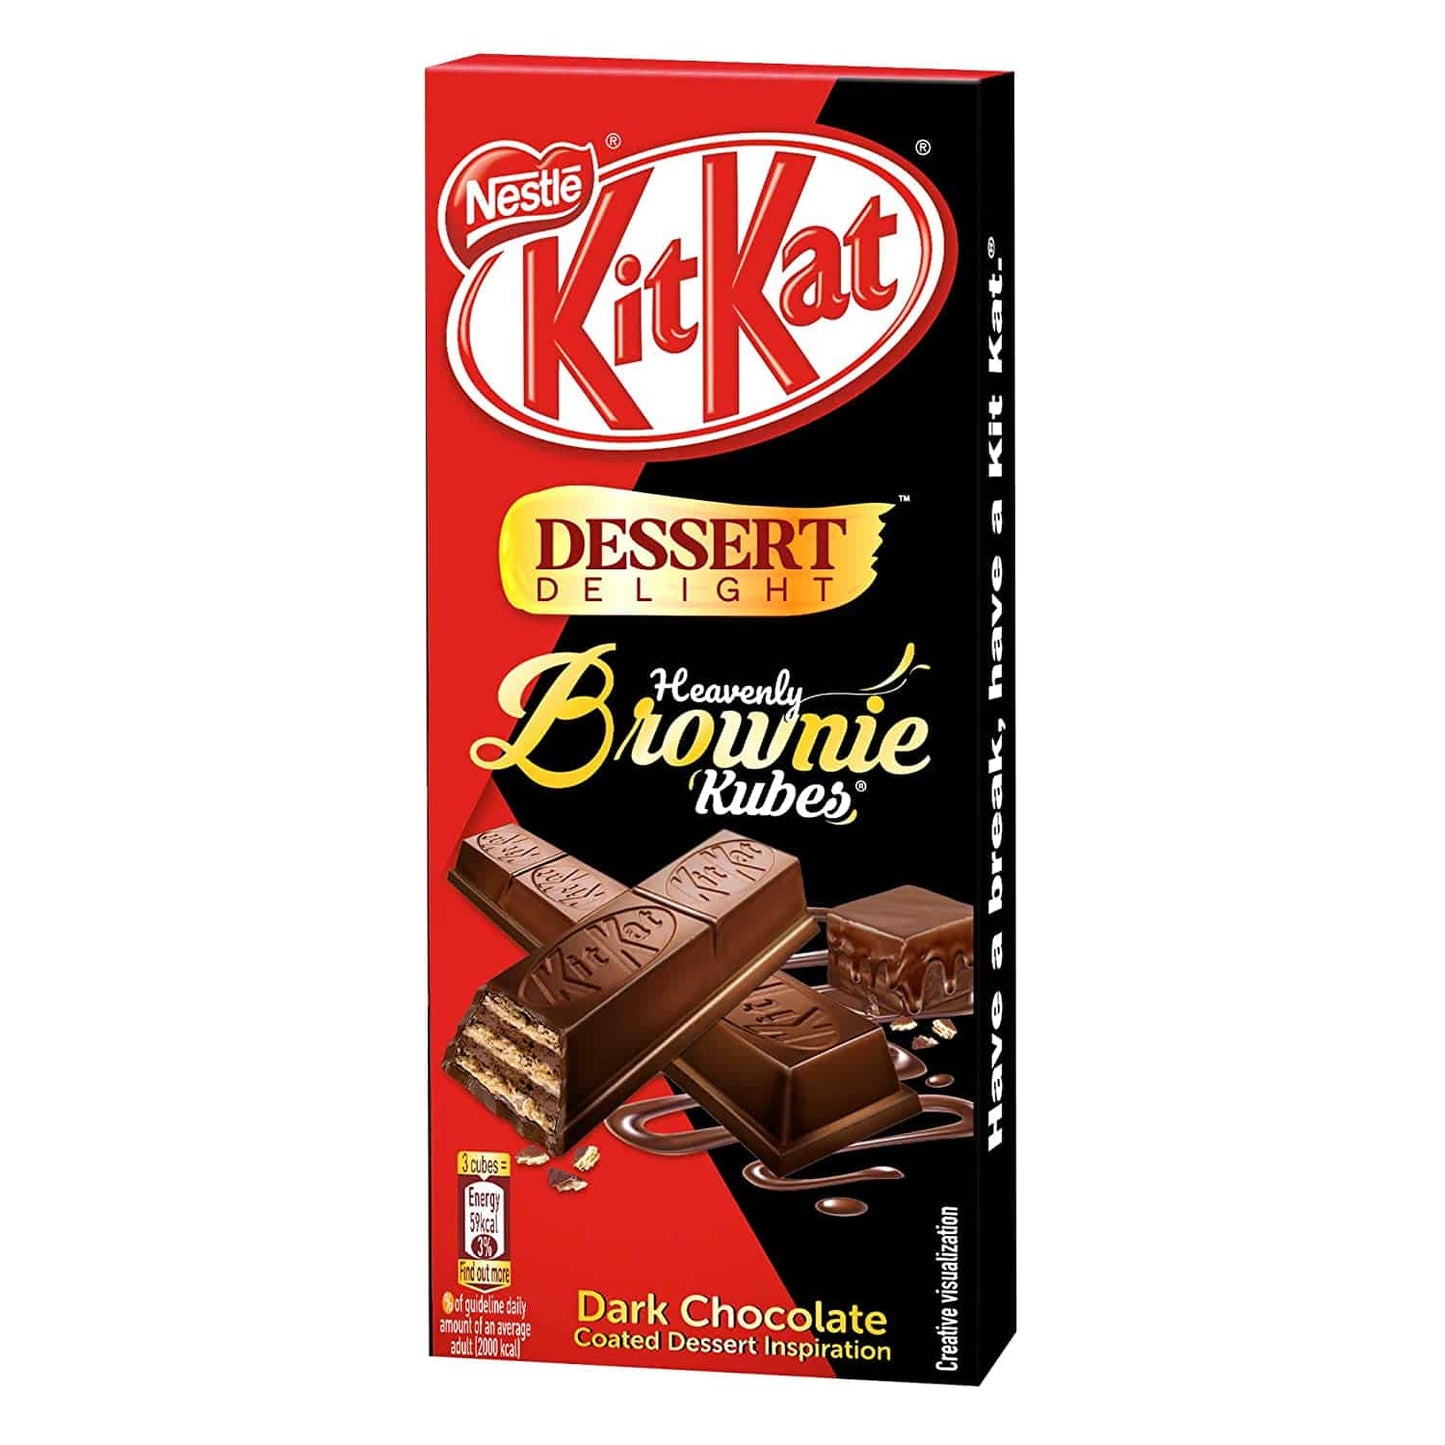 Nestle KitKat Desert Delight Brownie - 50g